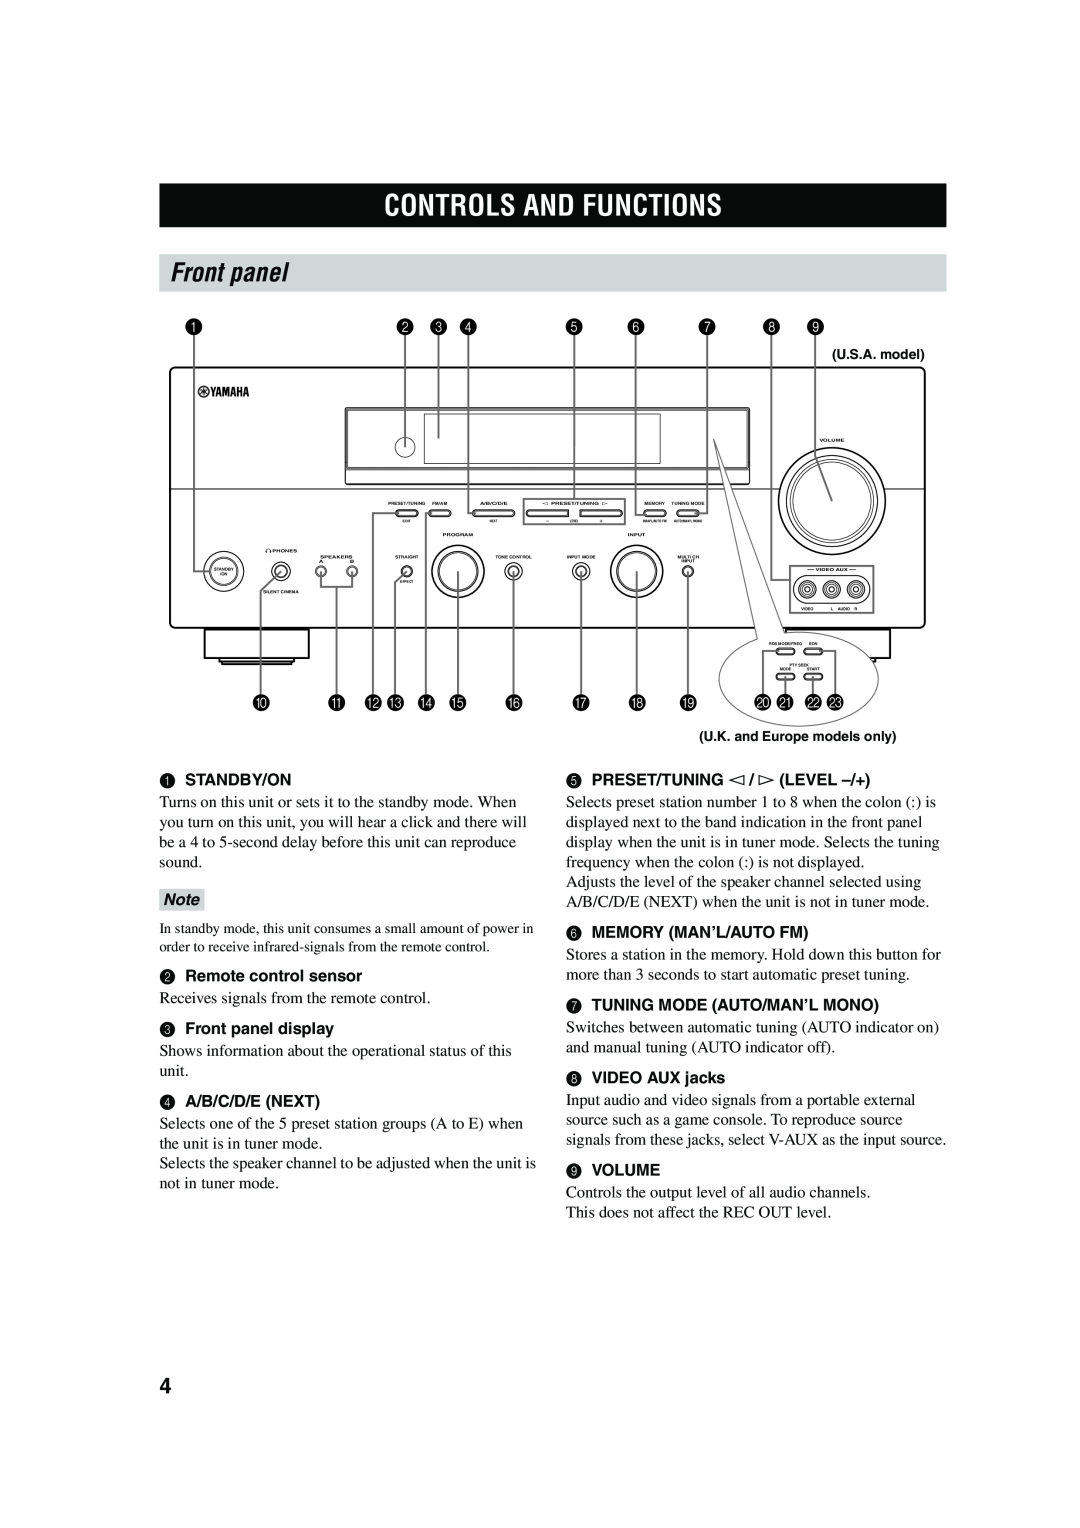 Yamaha RX-V550 owner manual Controls And Functions, Front panel, A B C D E F G H, J K L M 